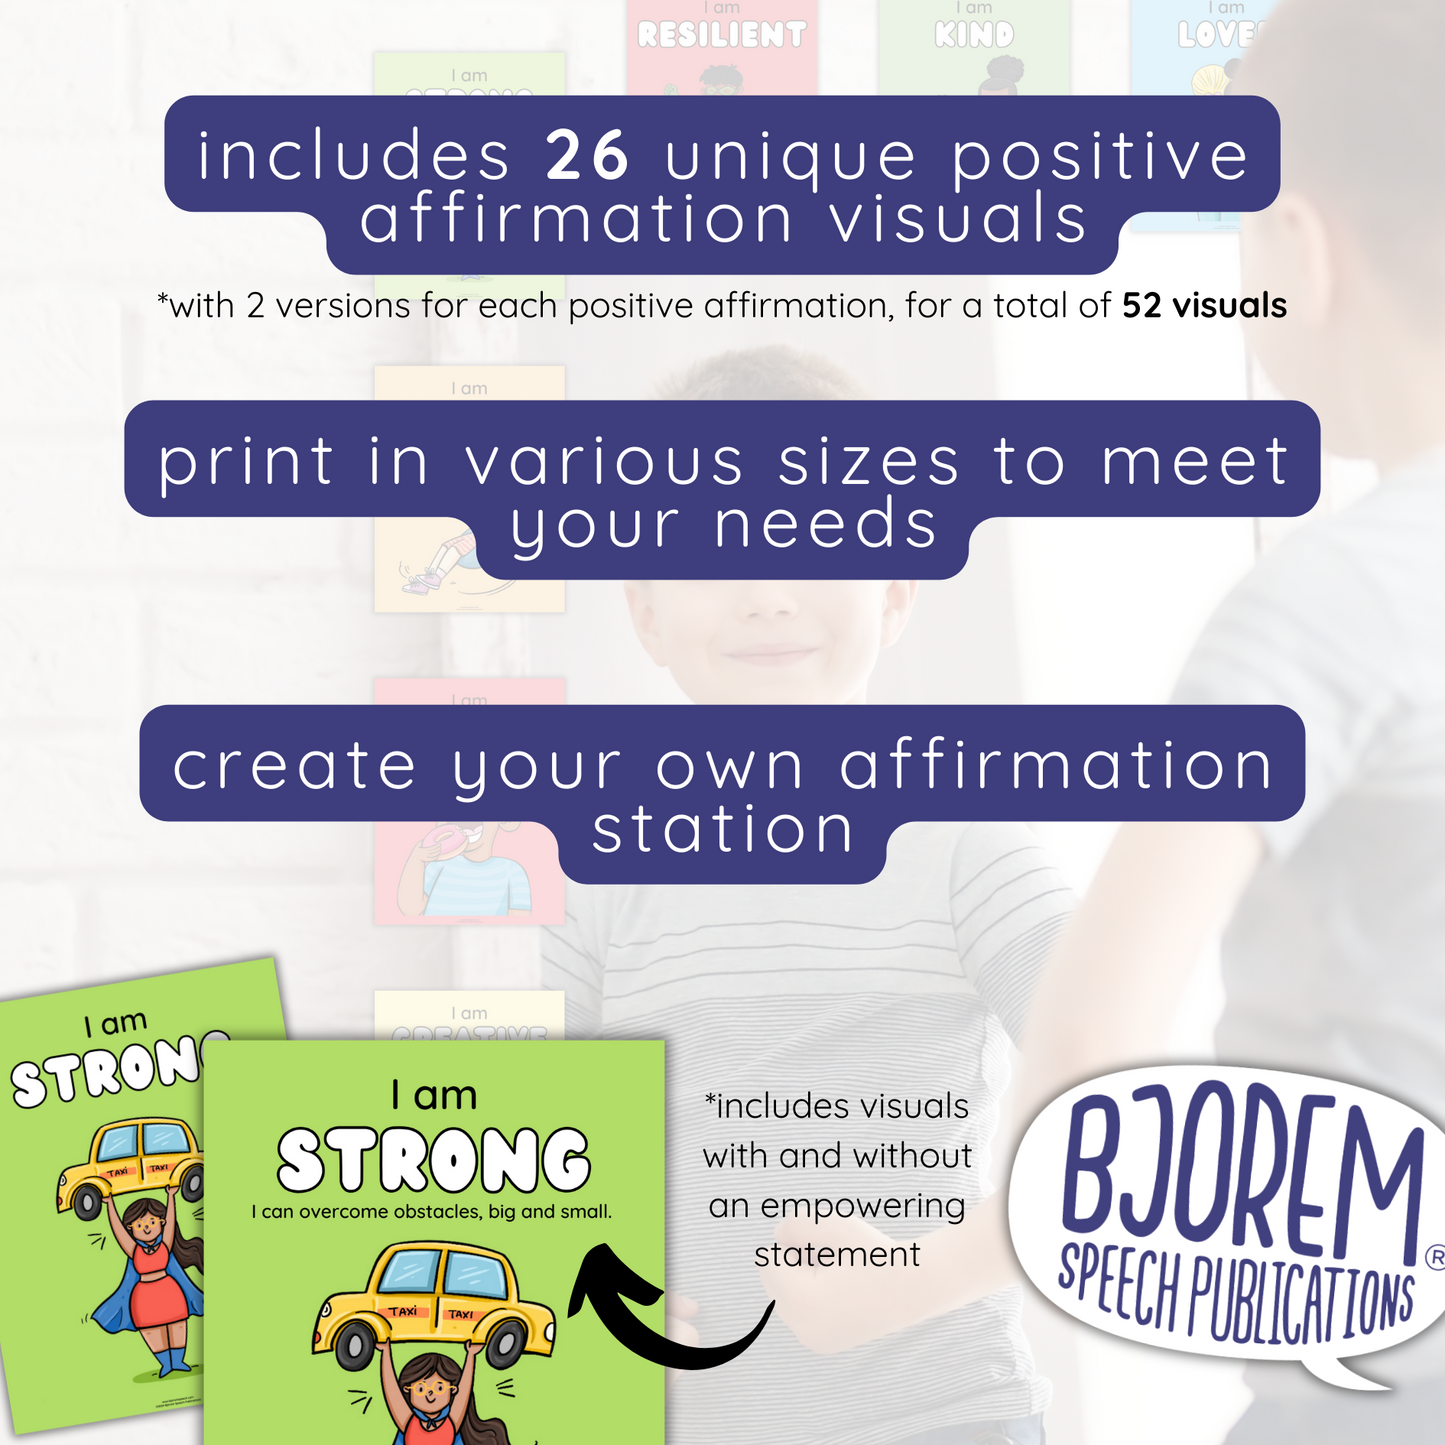 Growth Mindset Positive Affirmation Visuals - Digital Download